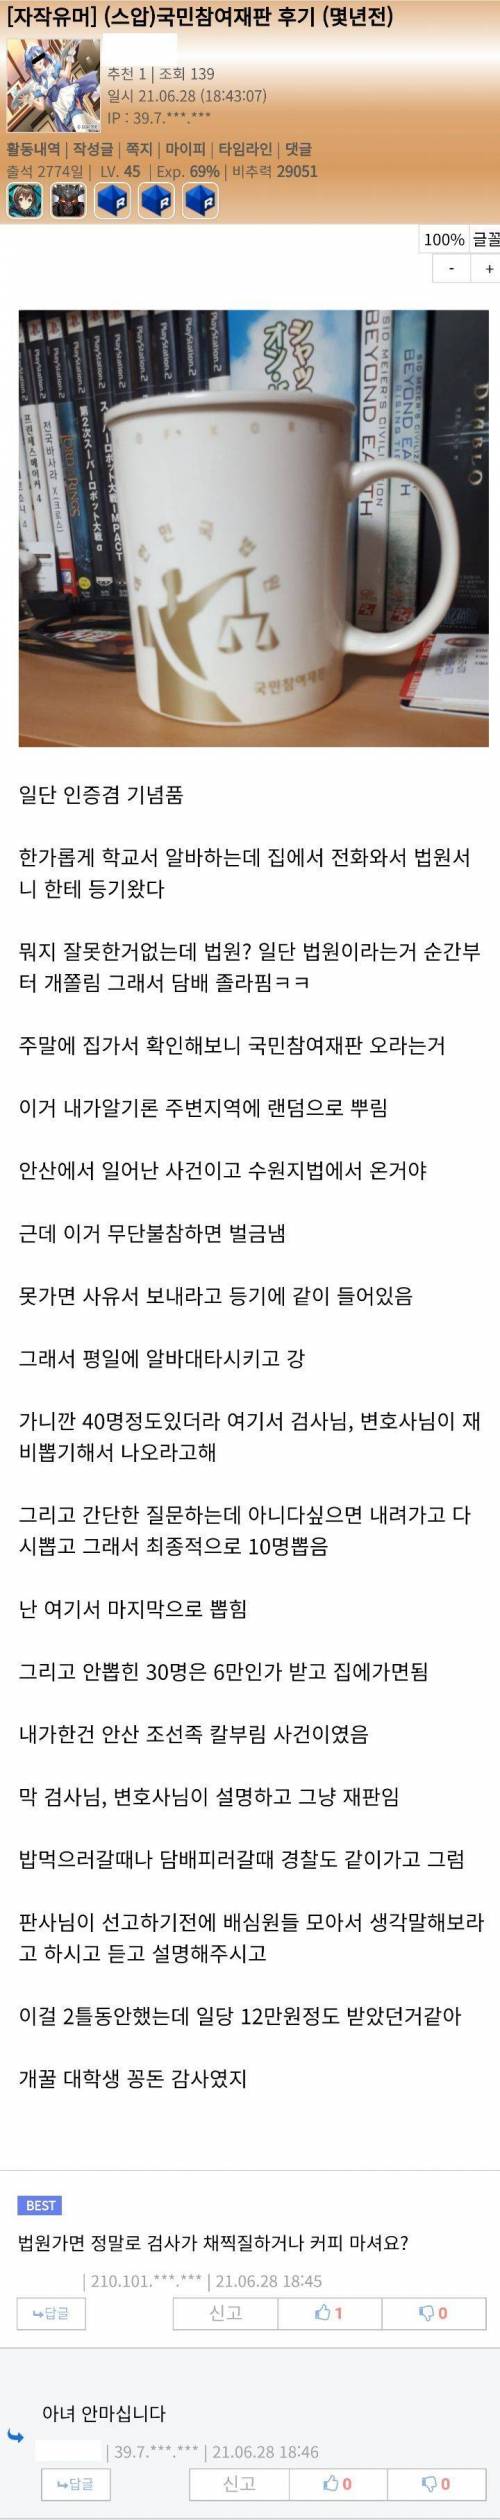 국민참여재판 후기.jpg